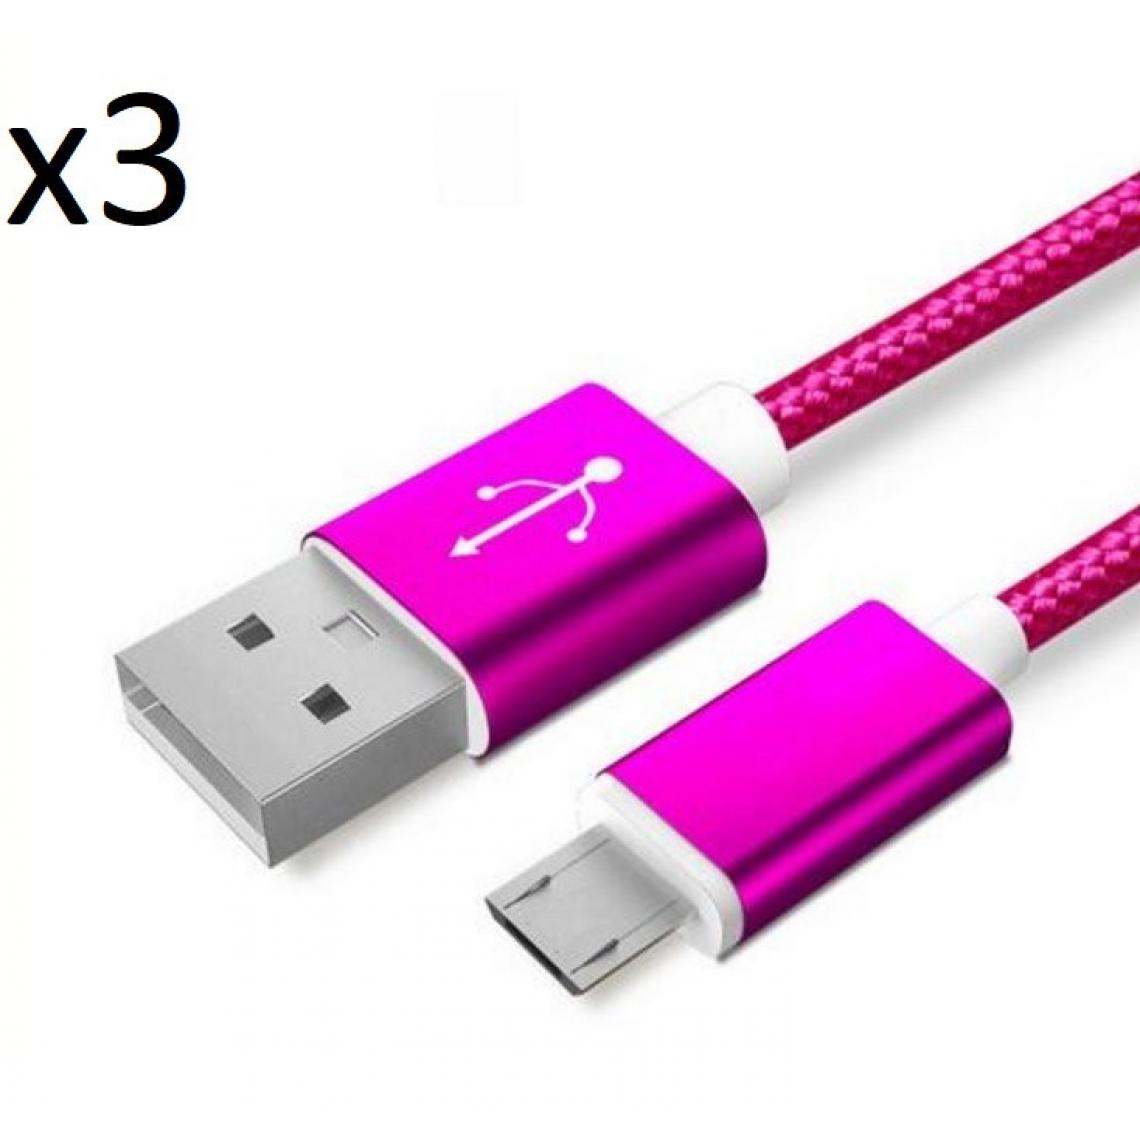 Shot - Pack de 3 Cables Metal Nylon Micro USB pour ALCATEL 1 2019 Smartphone Android Chargeur (ROSE BONBON) - Chargeur secteur téléphone